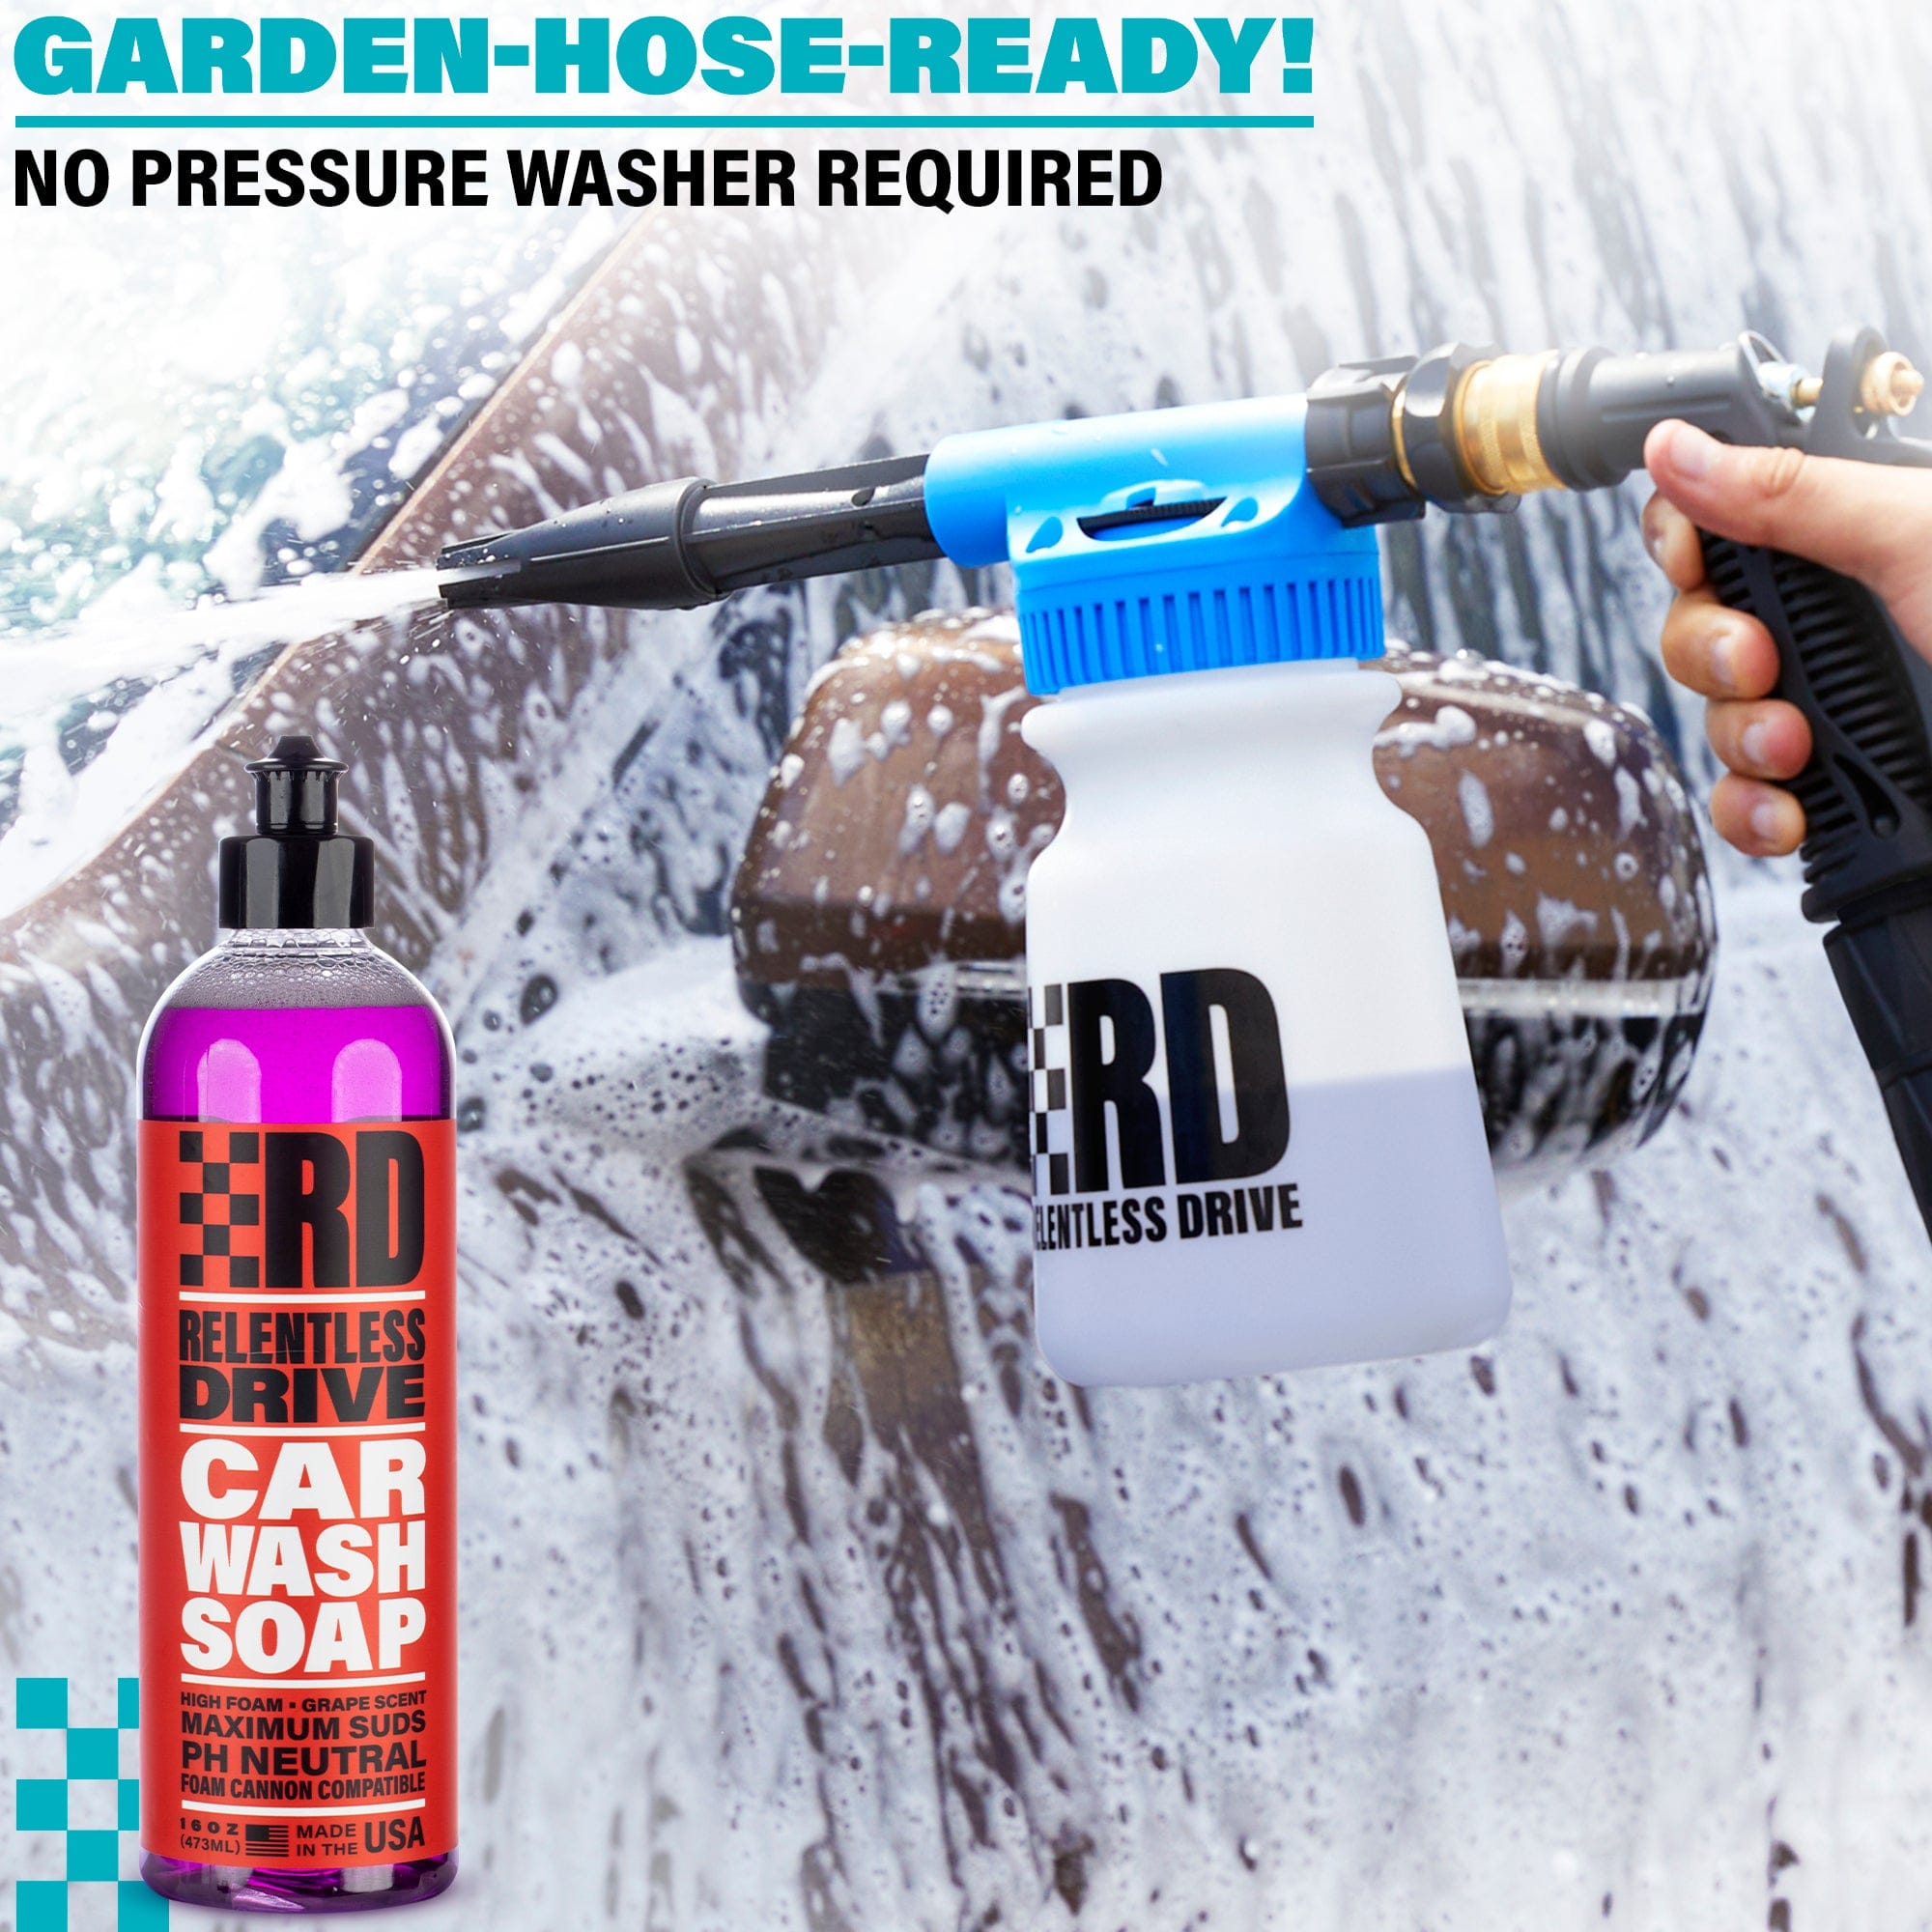 Relentless Drive Car Wash Kit (20pc) - Car Detailing & Car Cleaning Ki